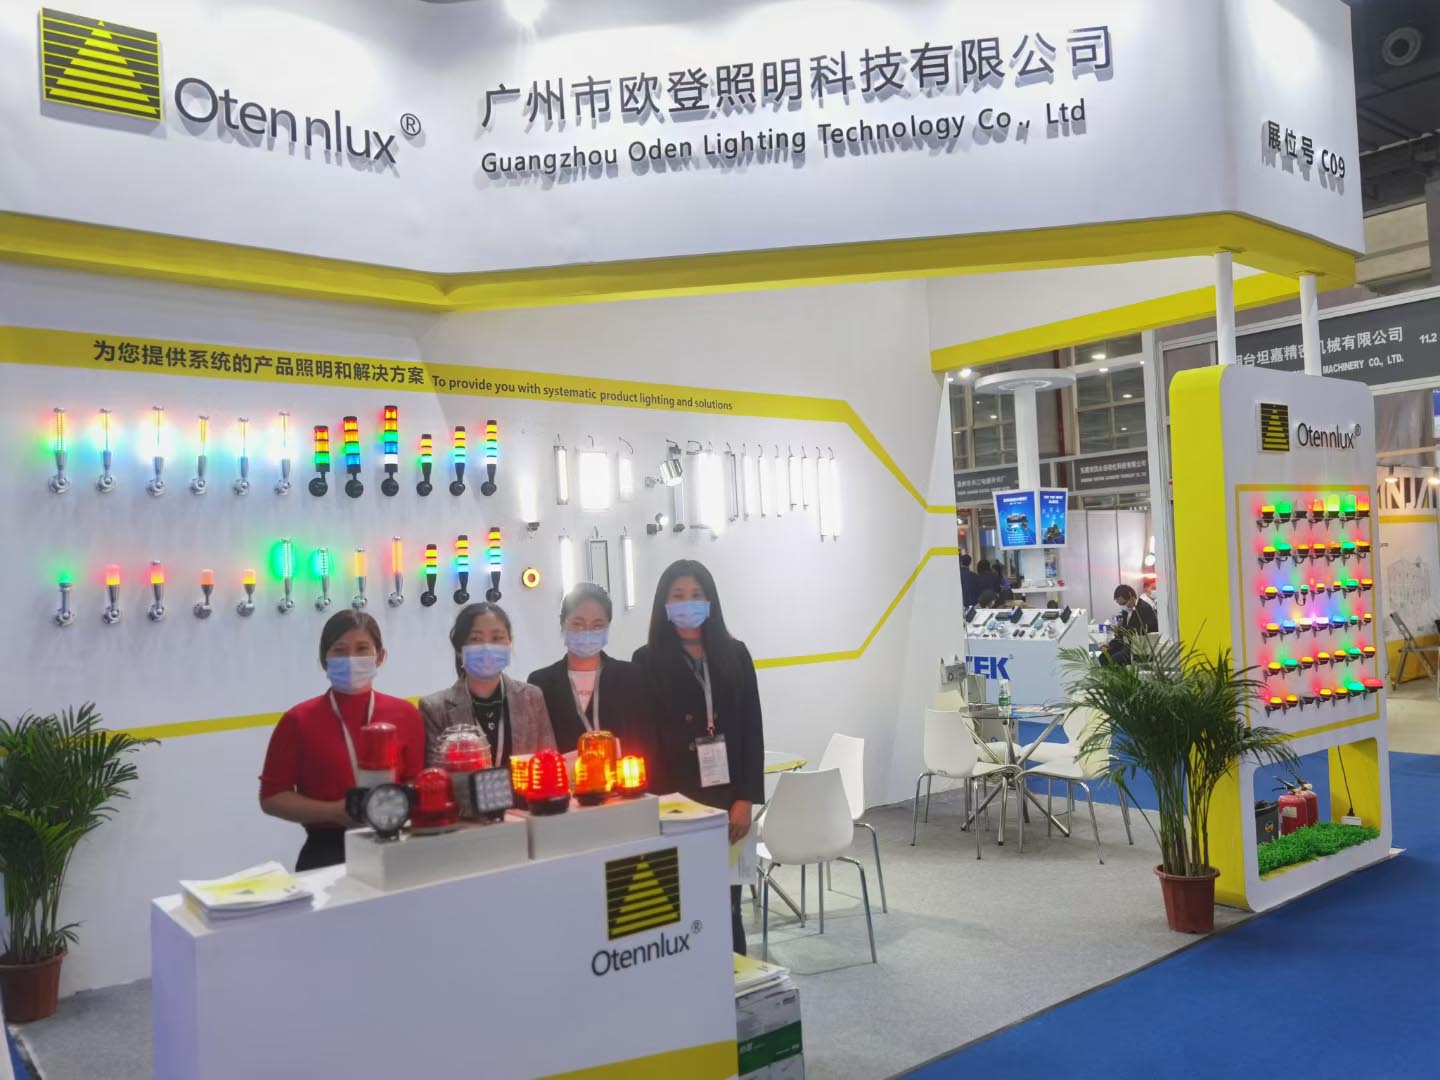  2021.03.03-03.05 Guangzhou Automation Exhibition bringt zu einem erfolgreichen in der Nähe. 